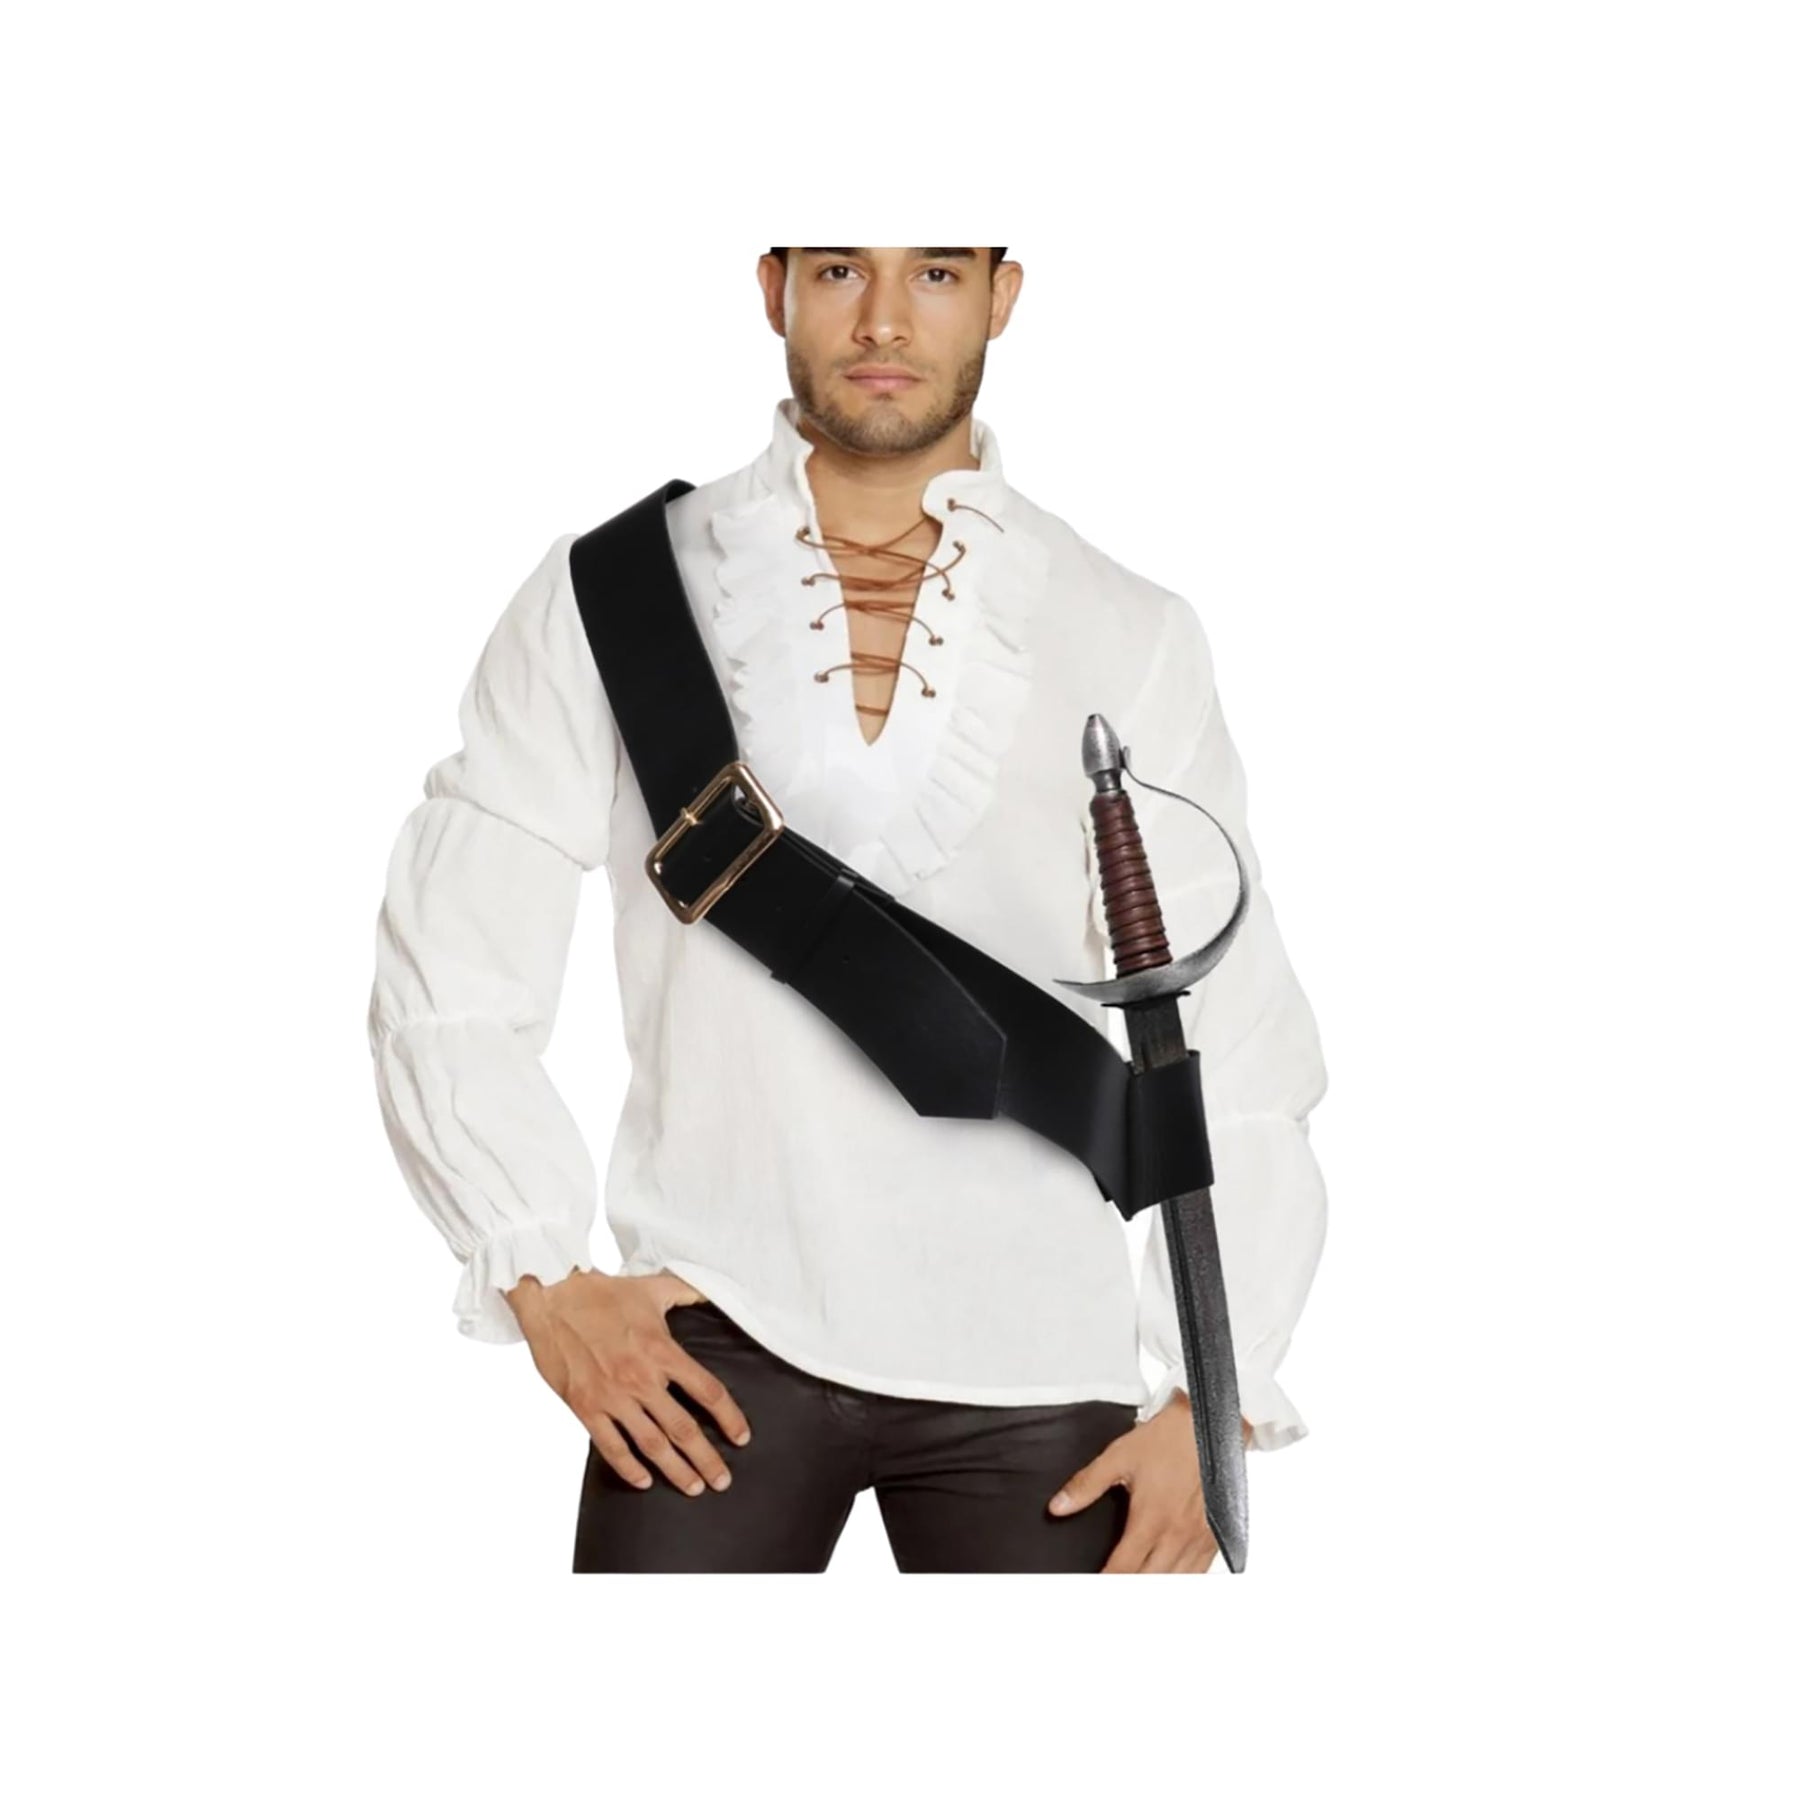 Leatherlike Cross Strap Sword Holder Adult Costume Accessory | Adjustable